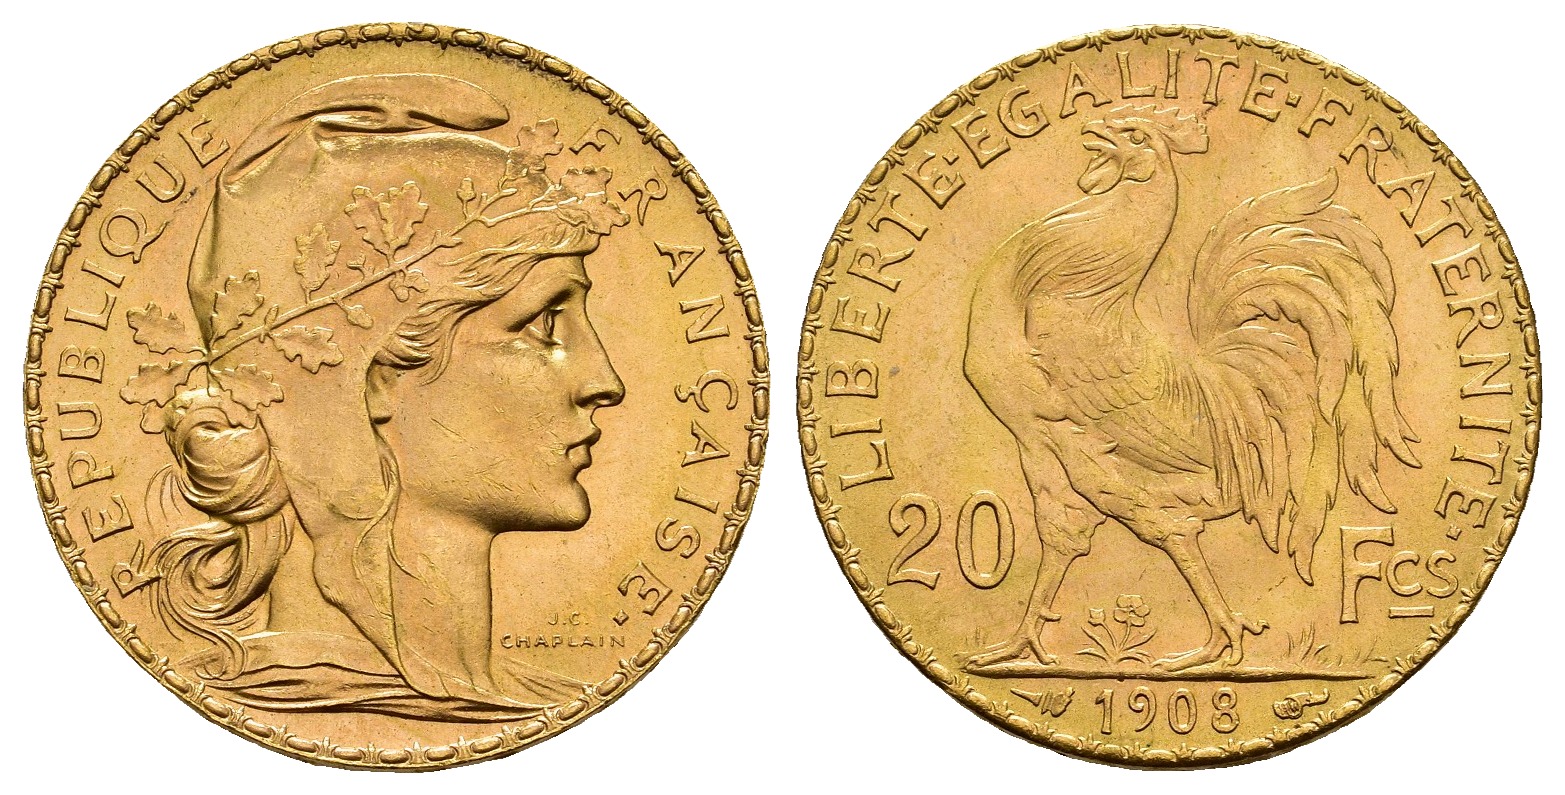 PEUS 8472 Frankreich 5,81 g Feingold. Marianne / Galischer Hahn 20 Francs GOLD 1908 Kl. Kratzer, Fast Stempelglanz